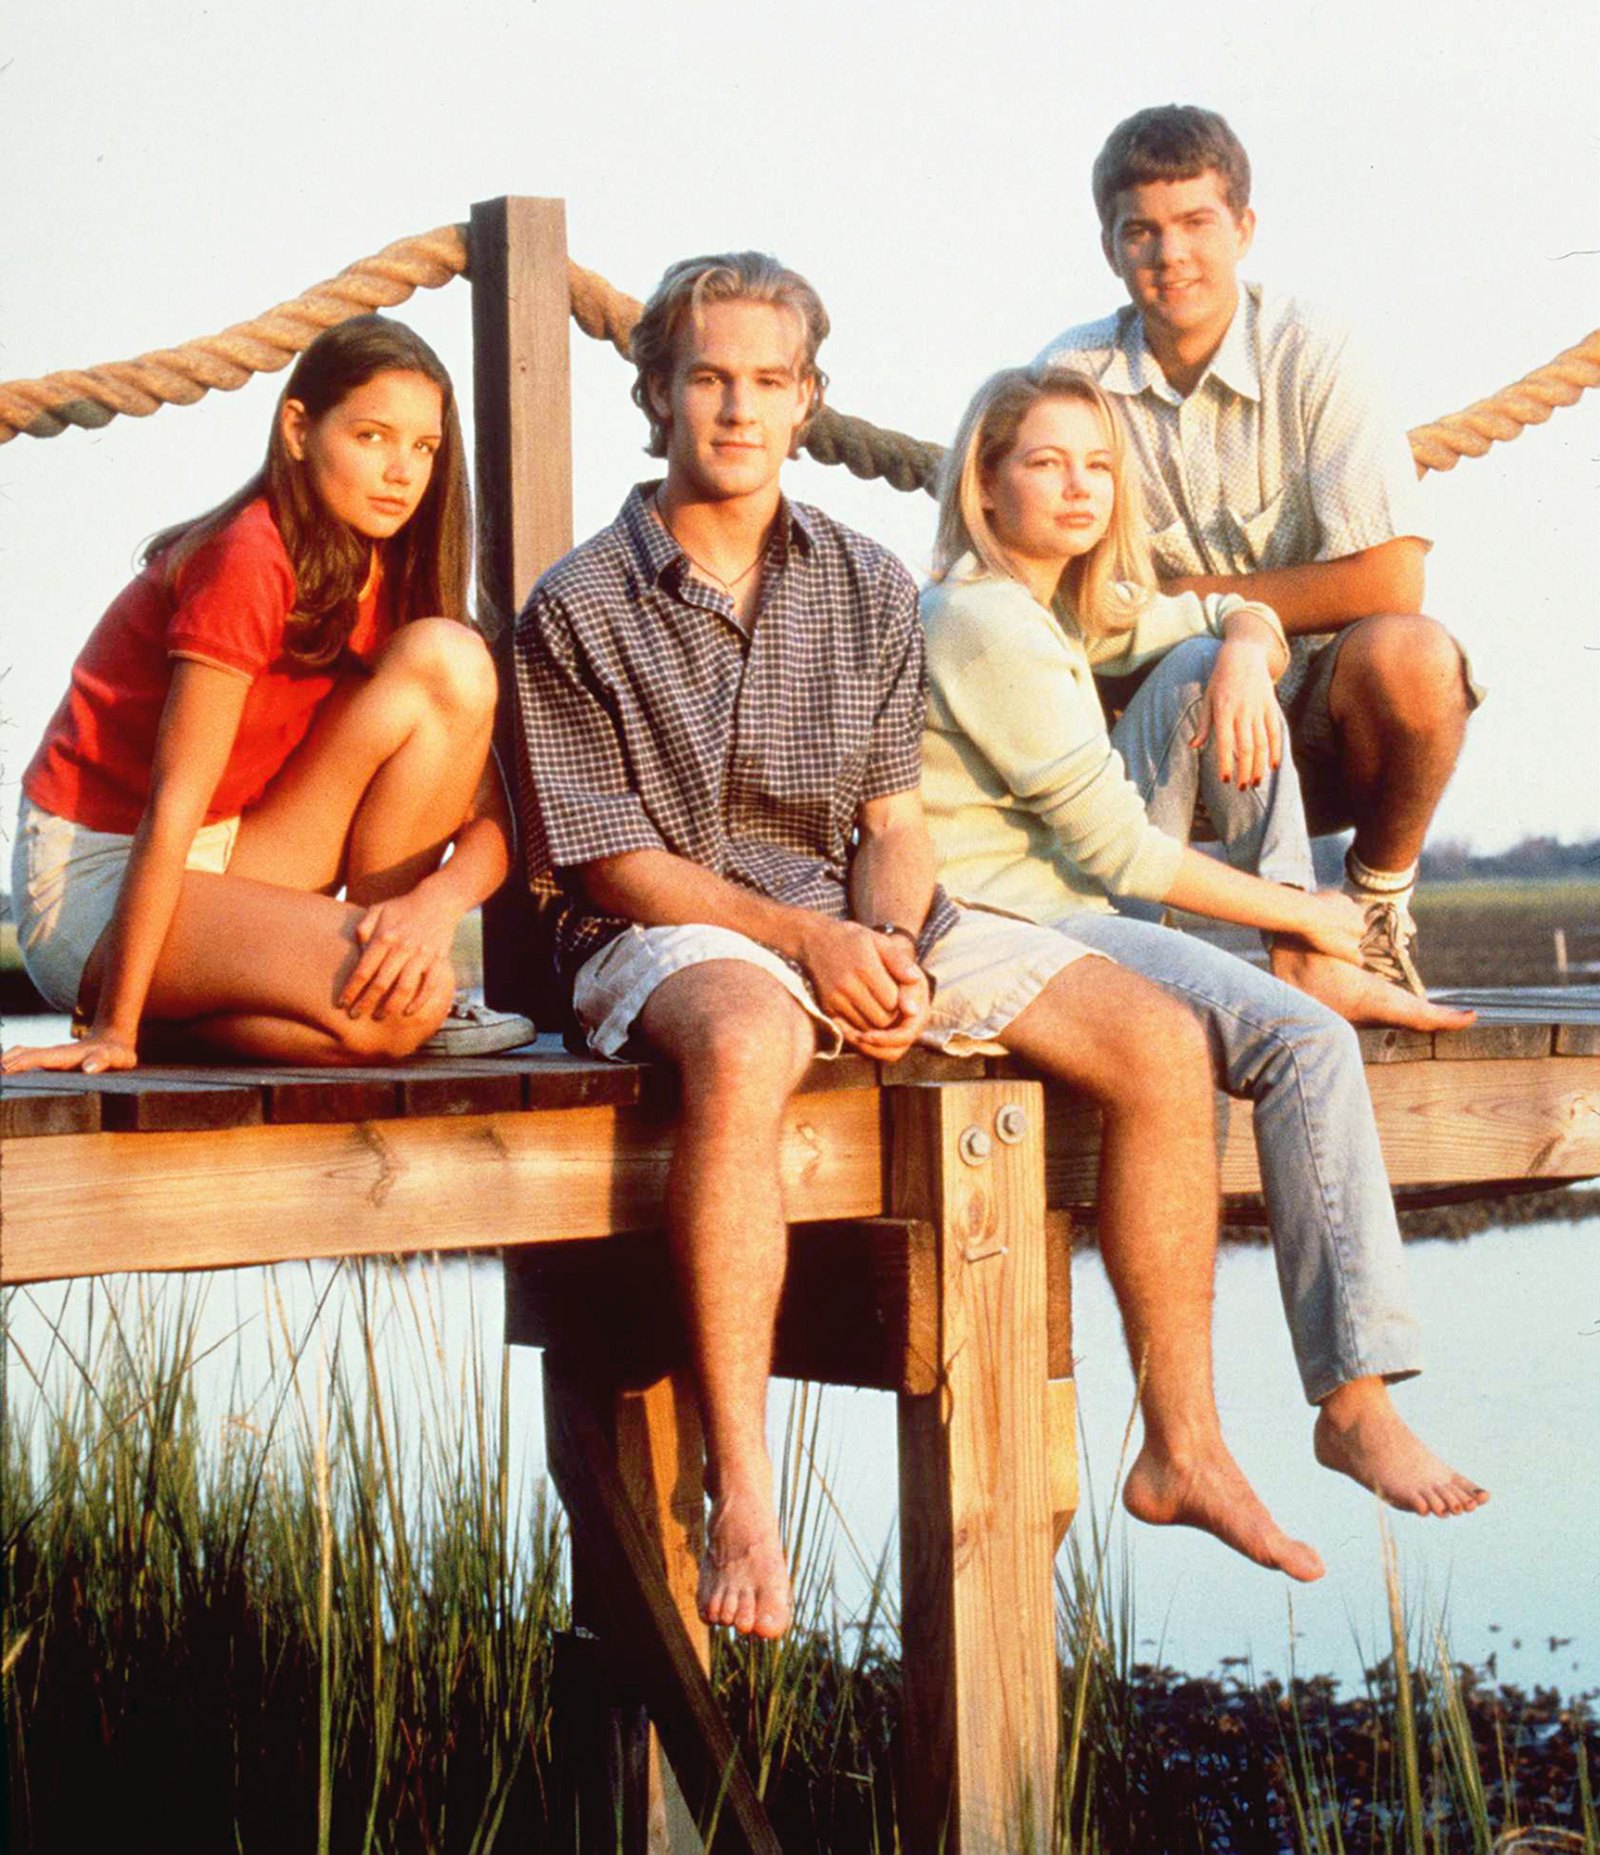 ‘Dawson's Creek‘ stars Katie Holmes, James Van Der Beek, Michelle Williams and Joshua Jackson